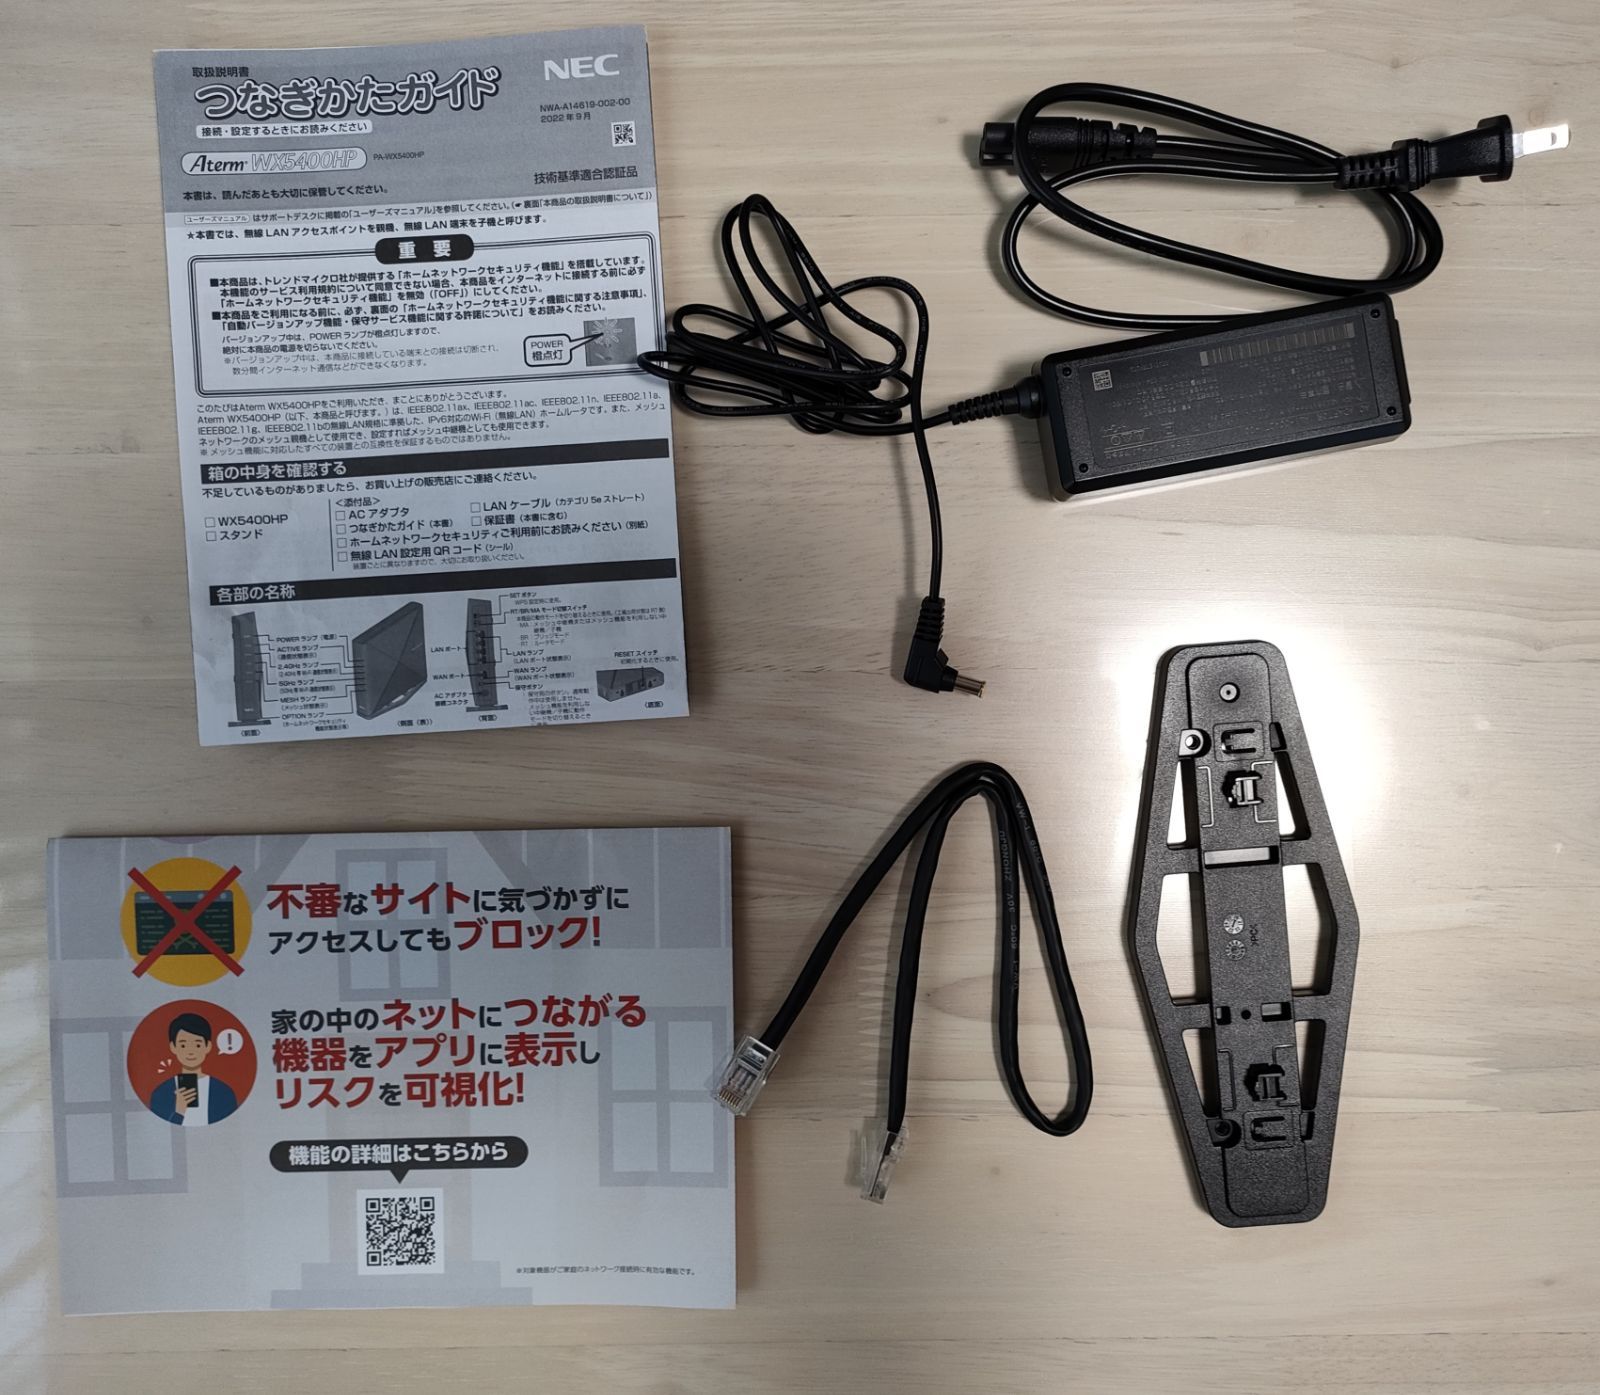 誠実 NEC PA-WX5400HP 無線LANルータ Aterm ブラック sonhaflex.pt